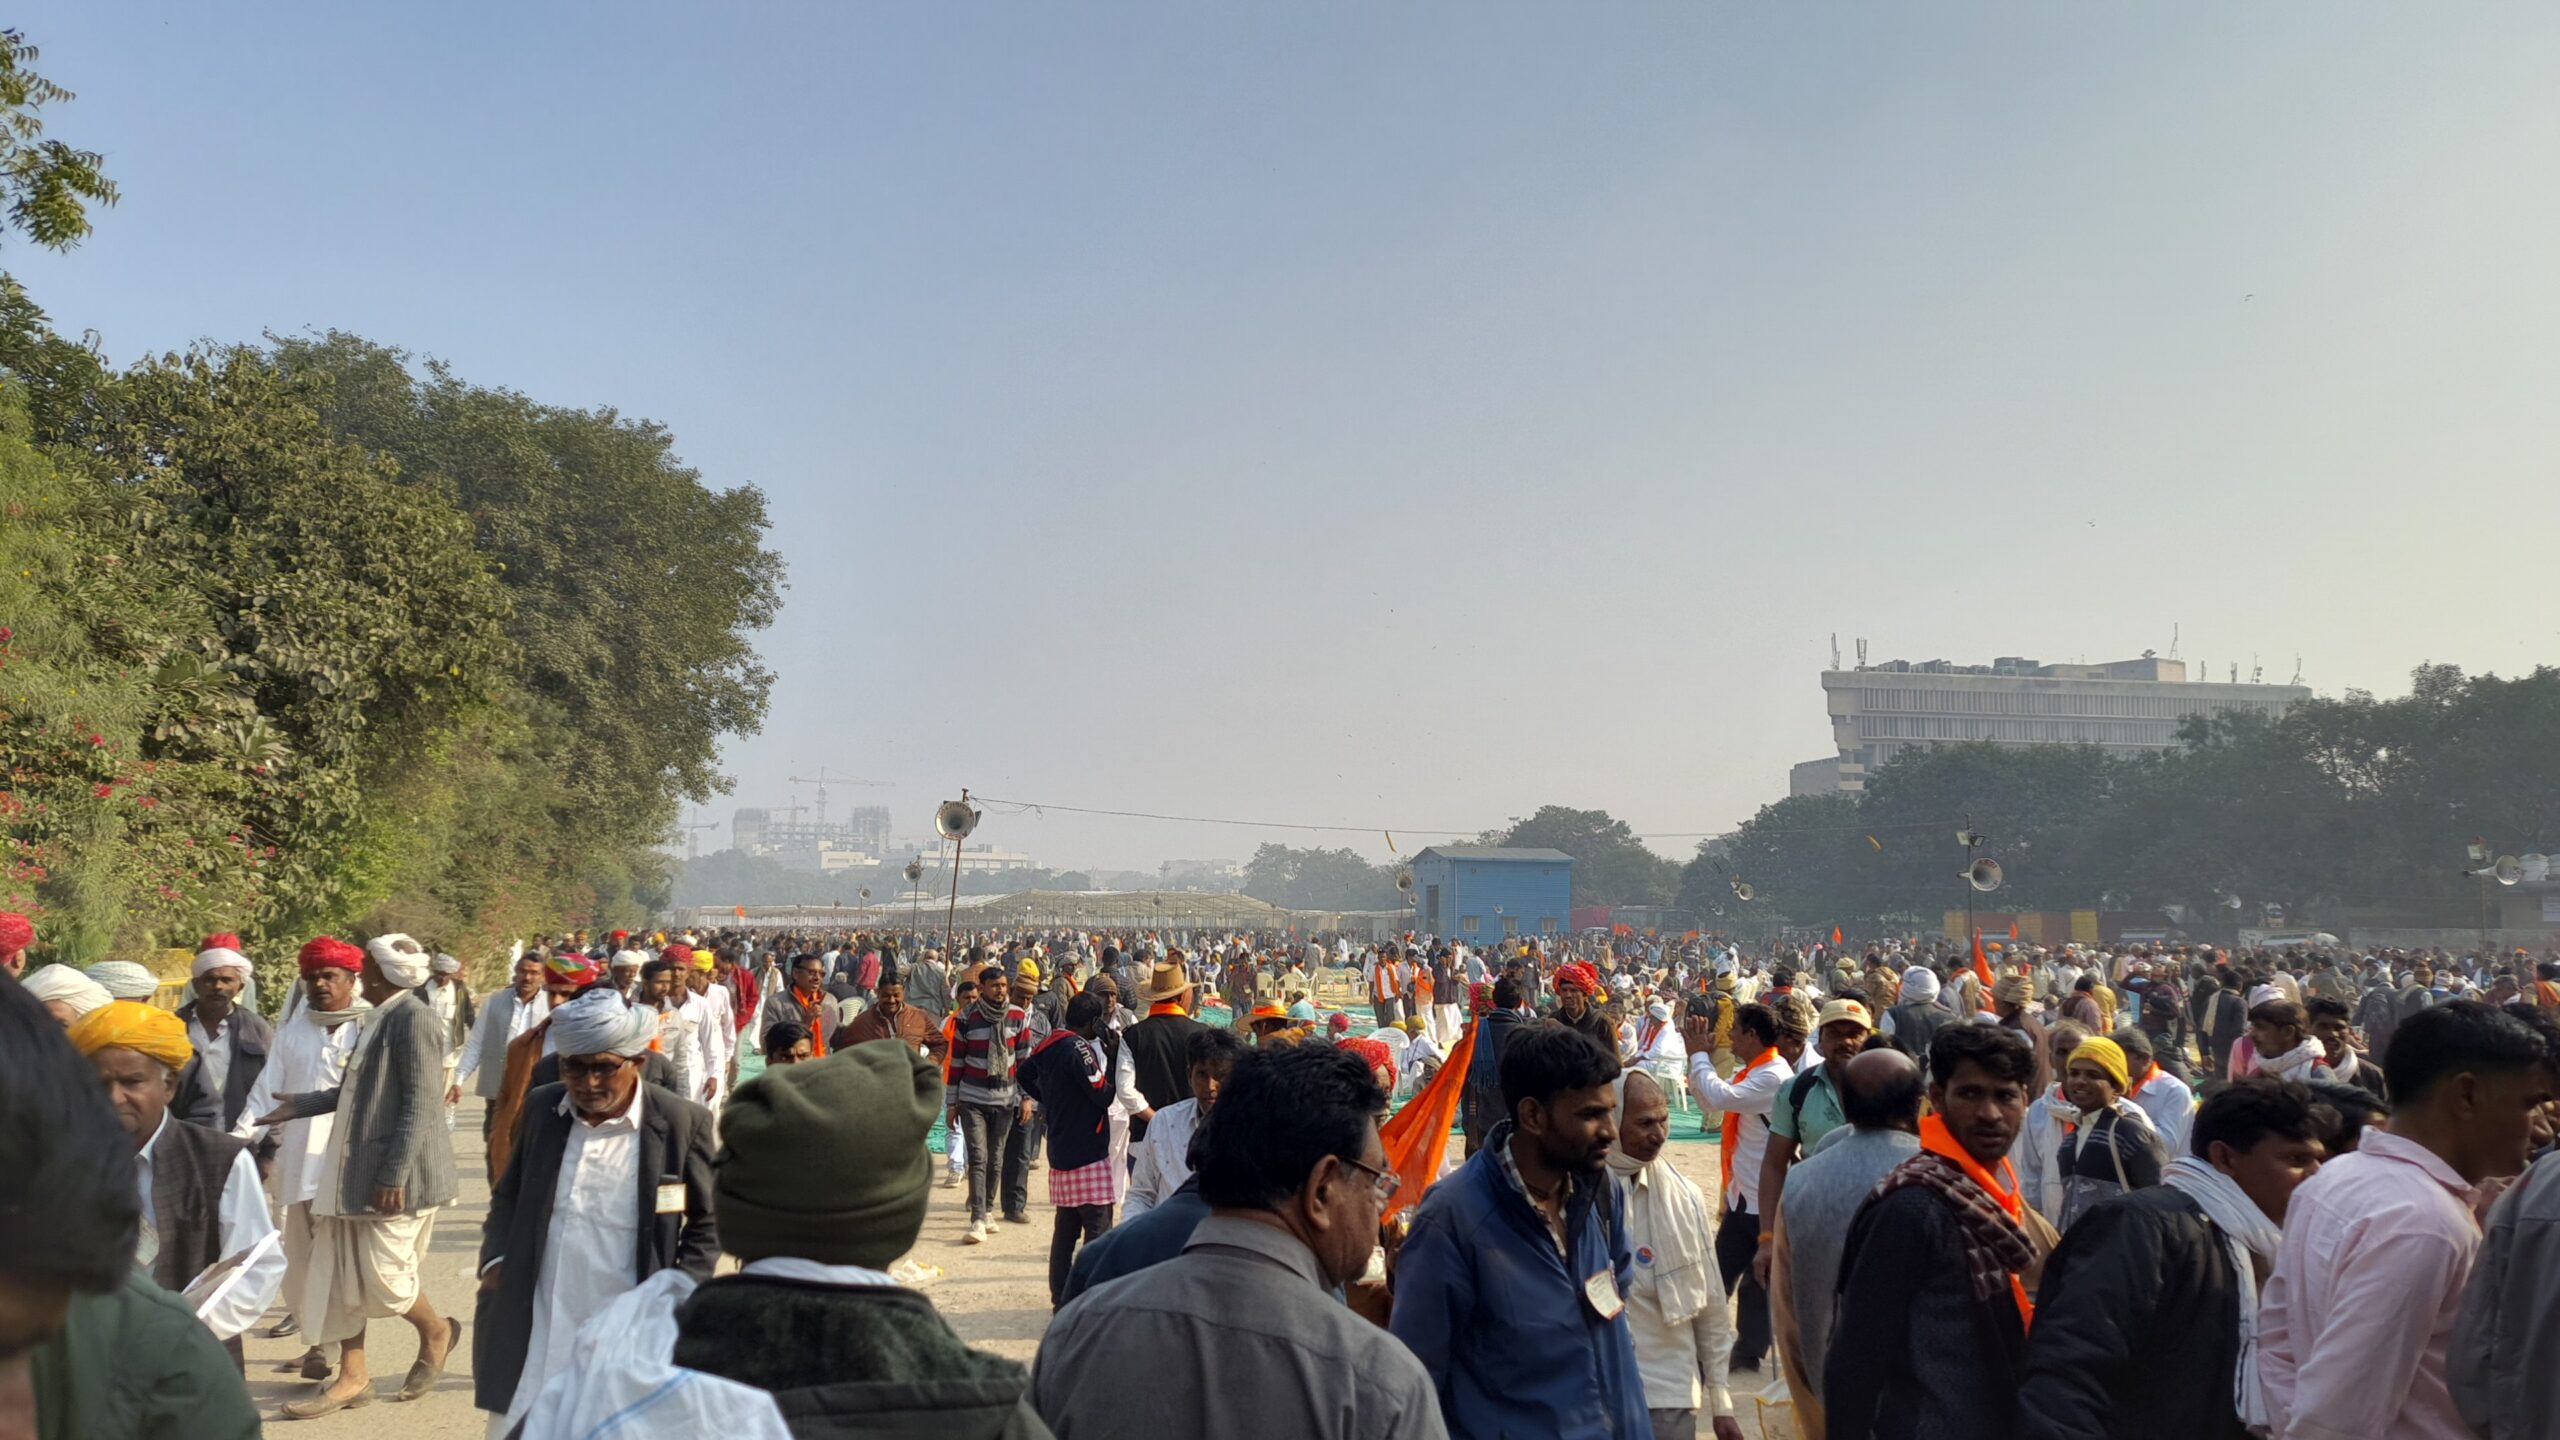 Kisan Garjana Rally- Bharatiya Kisan Sangh Organises Farmers’ Protest in Delhi